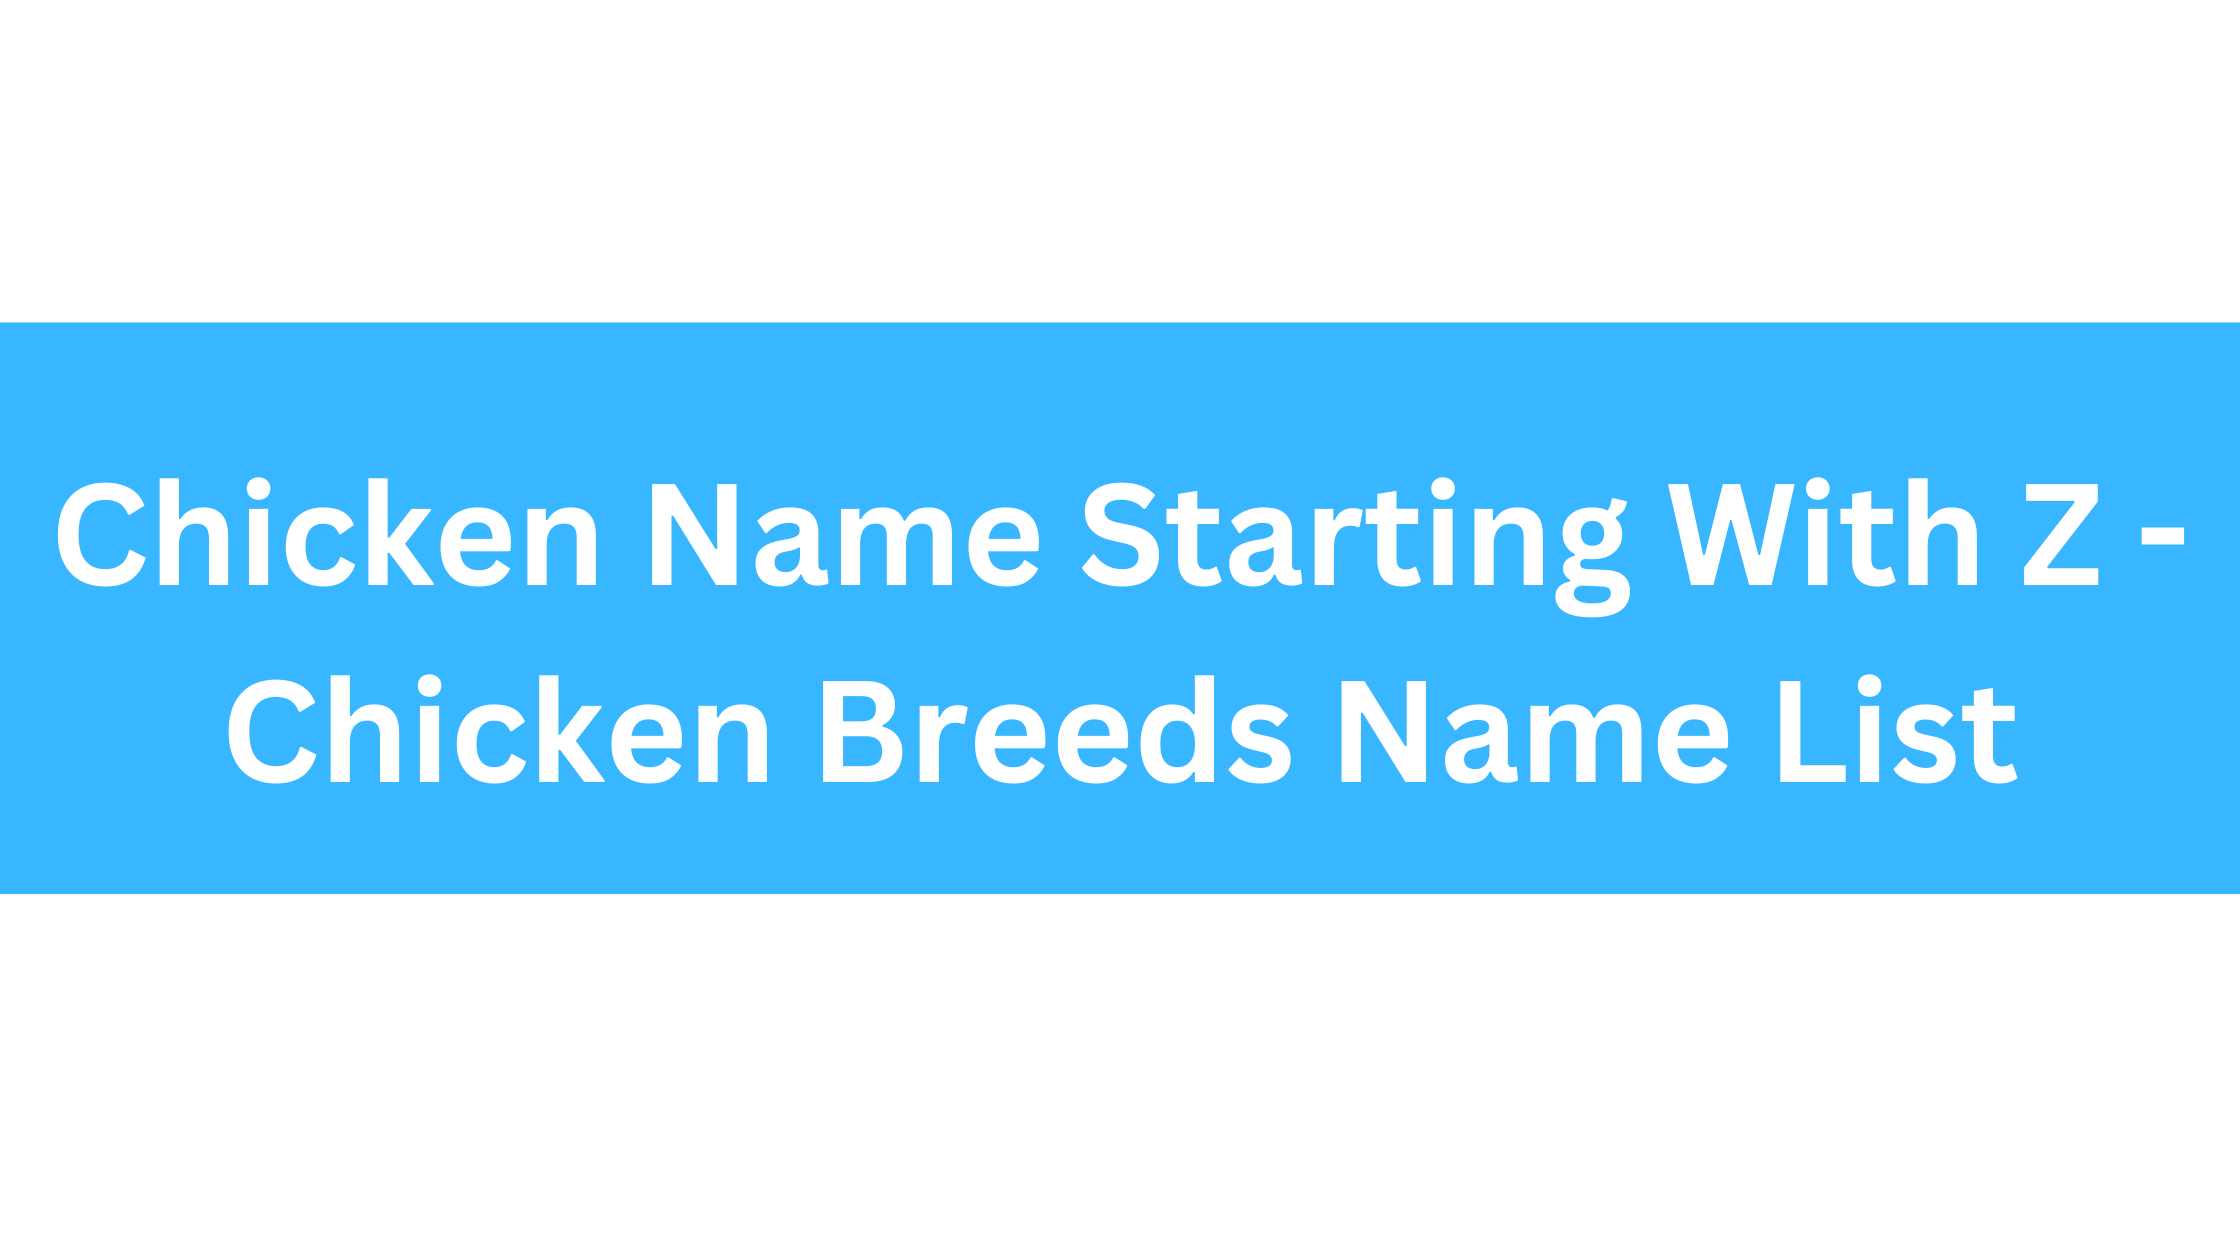 Chicken Breeds That Start With Z